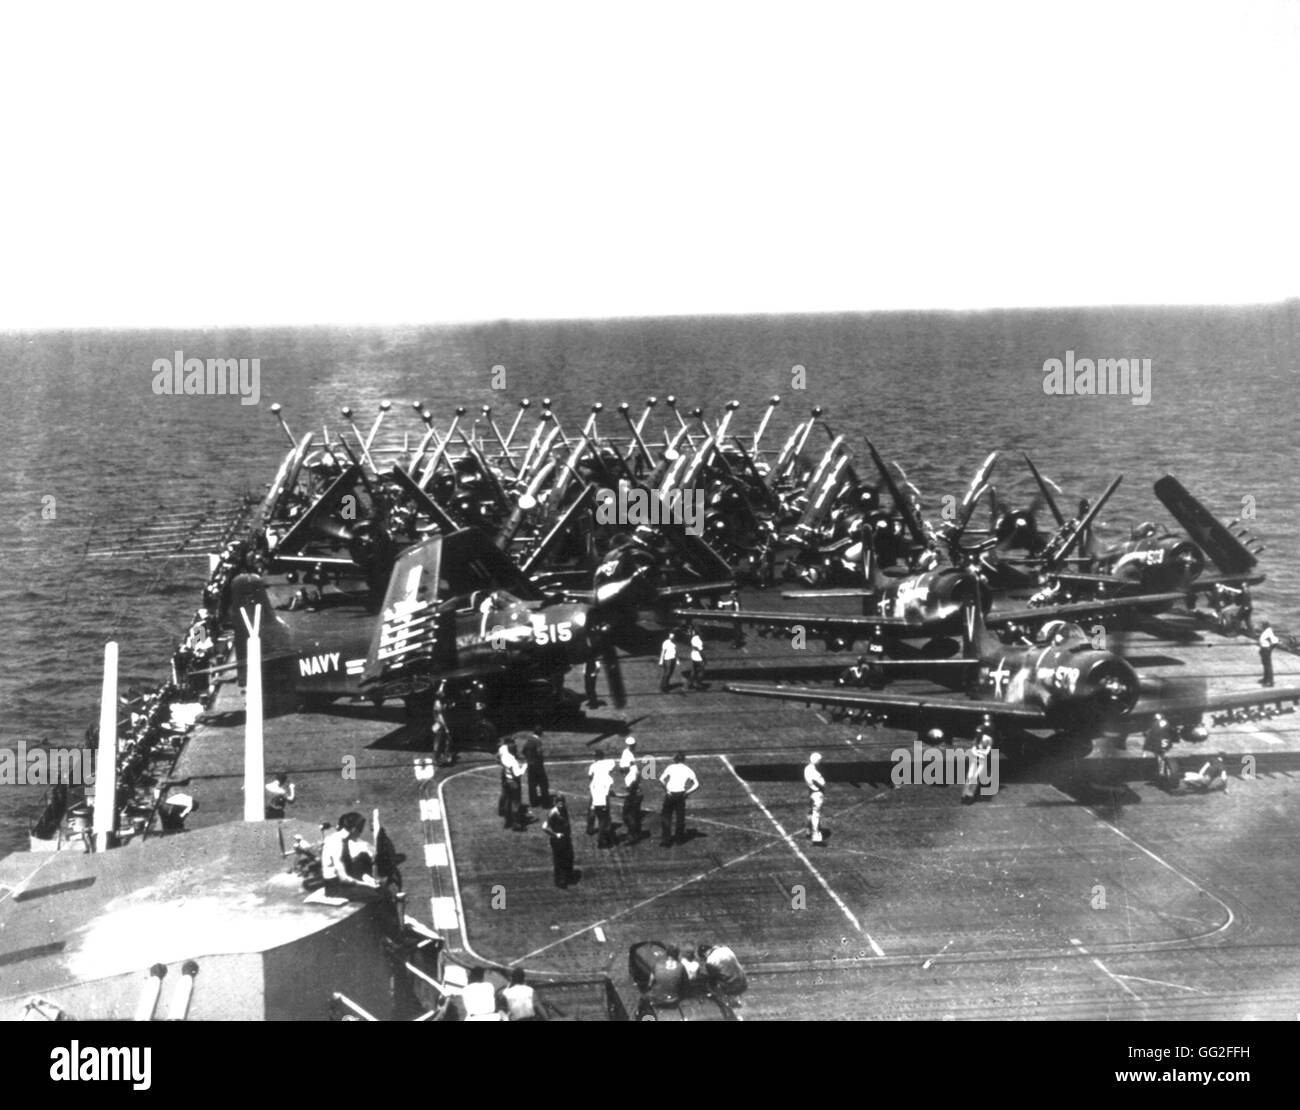 En la cubierta del buque norteamericano "Philippine', los aviones armados con cohetes y bombas, esperar la señal de partida. El 18 de septiembre de 1950, Guerra de Corea National Archives - Washington Foto de stock